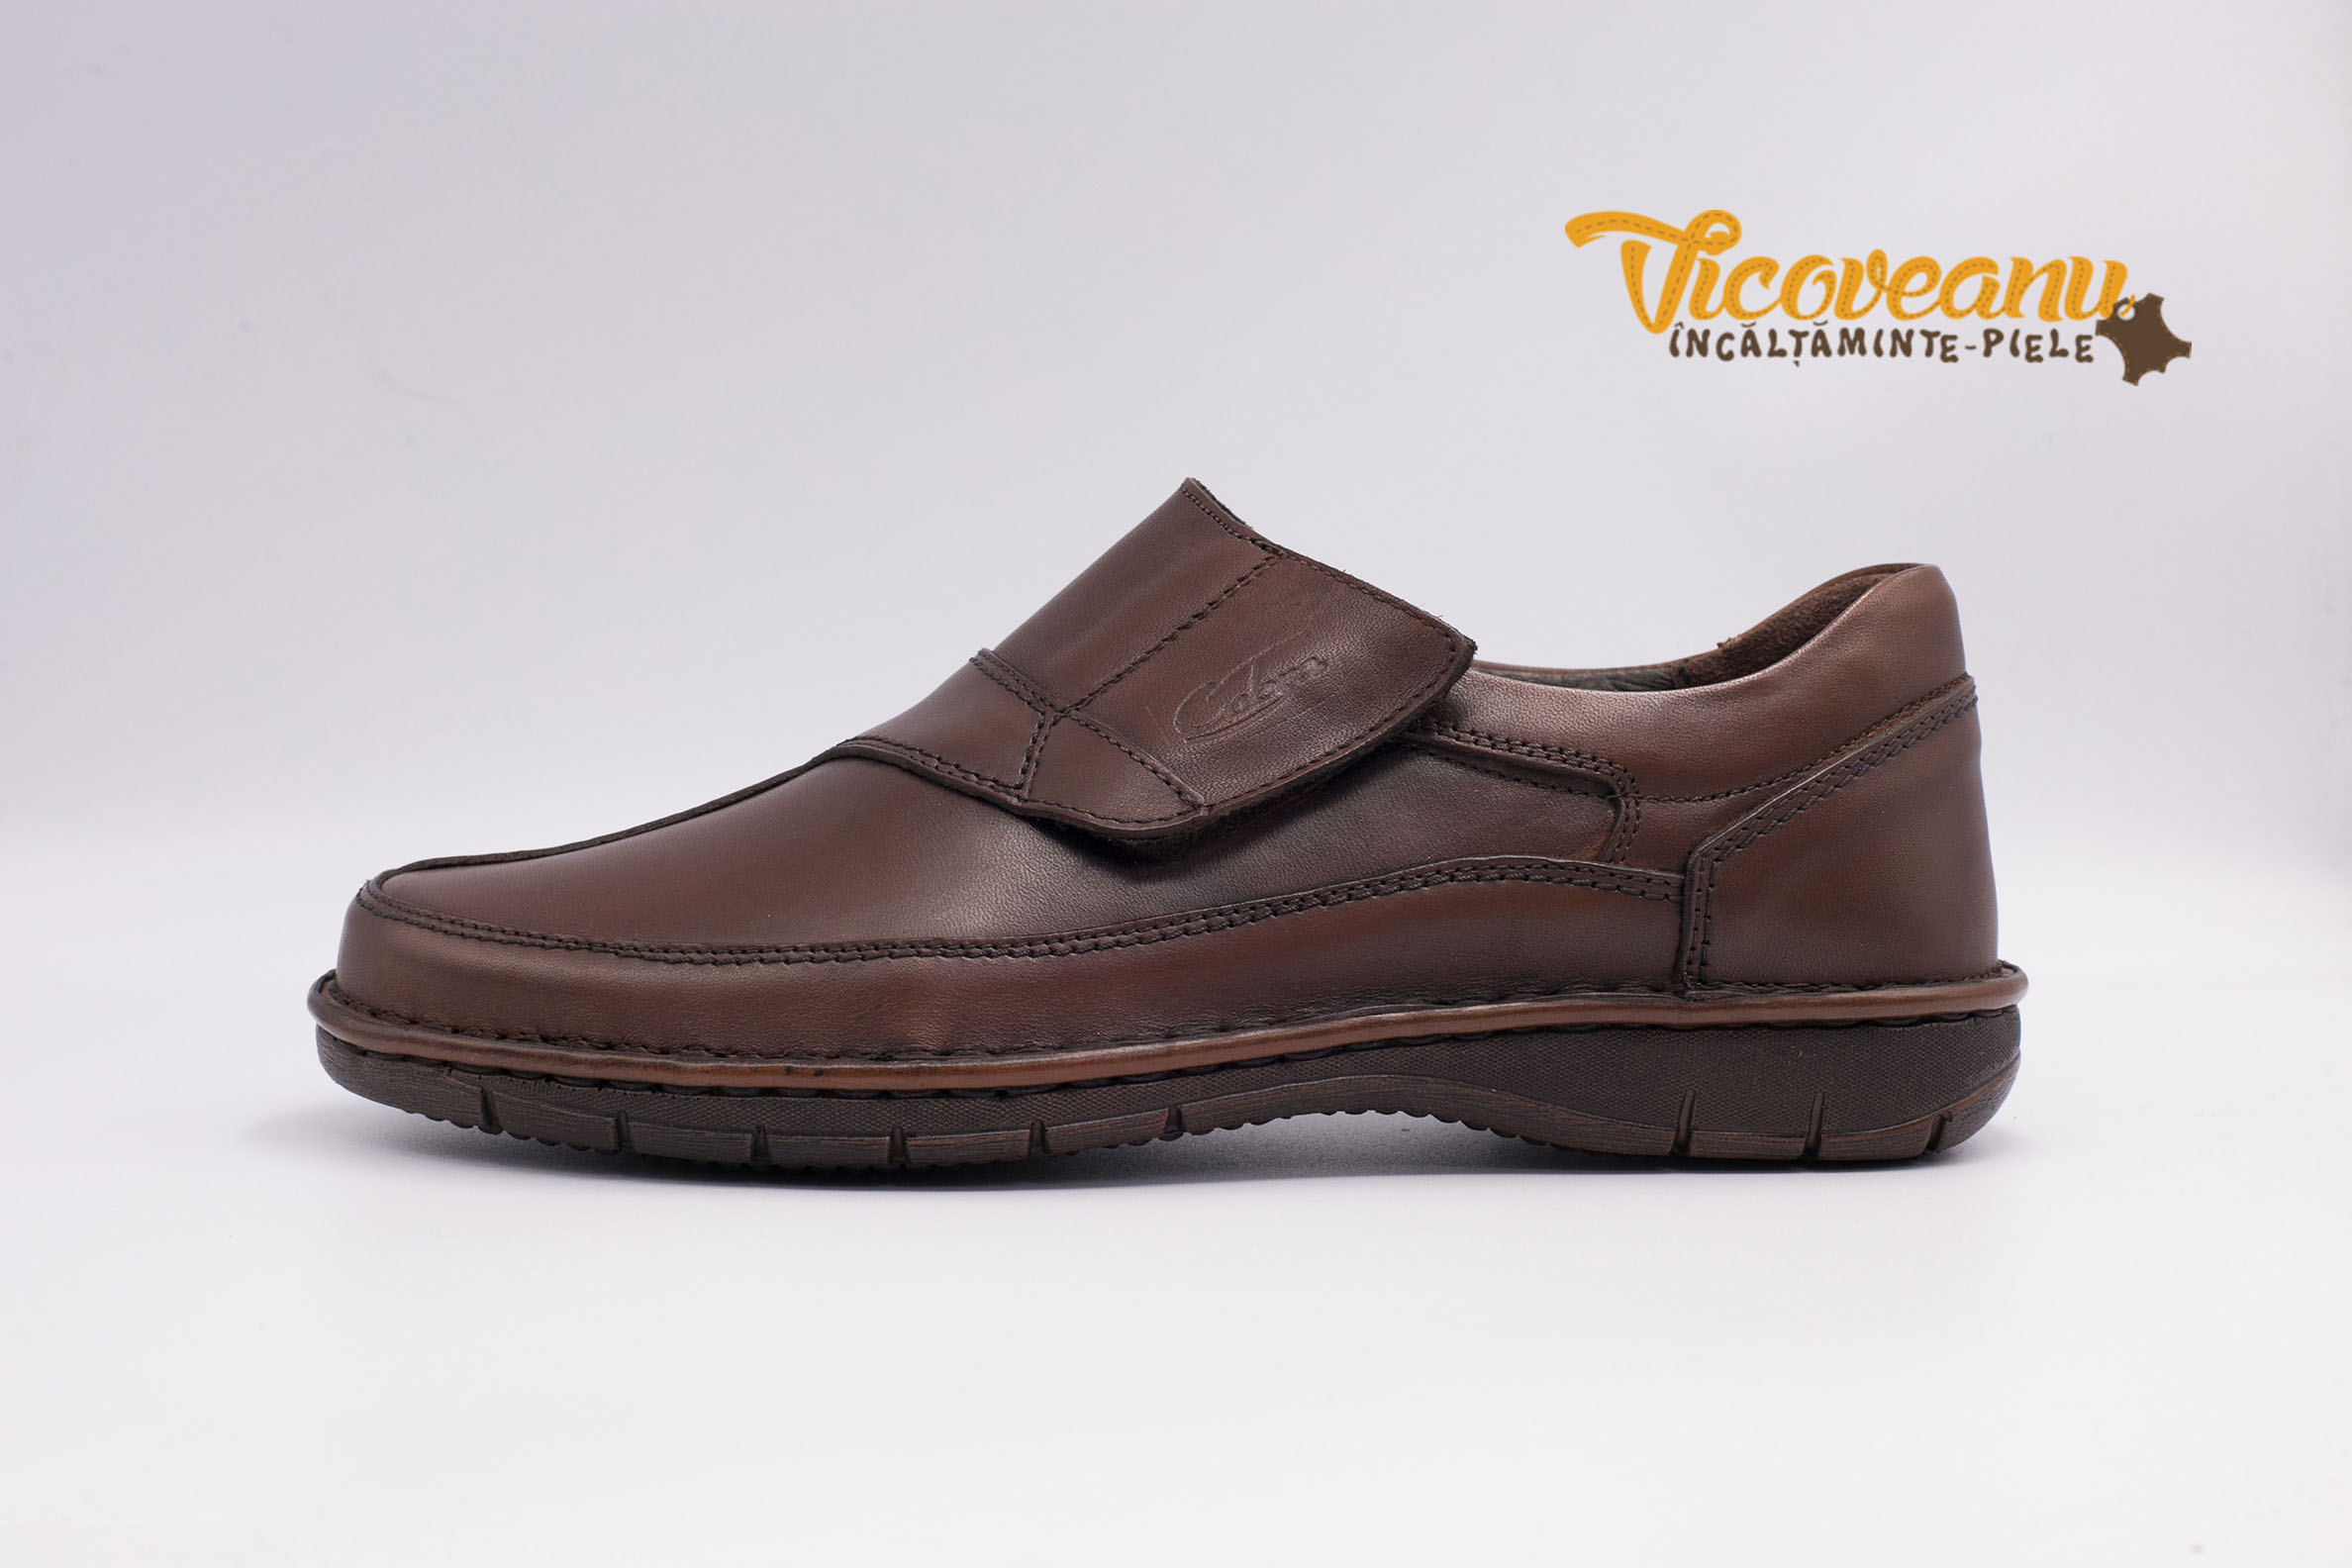 Discolor antique reaction Pantofi din piele pentru barbati, pantofi prindere cu scai